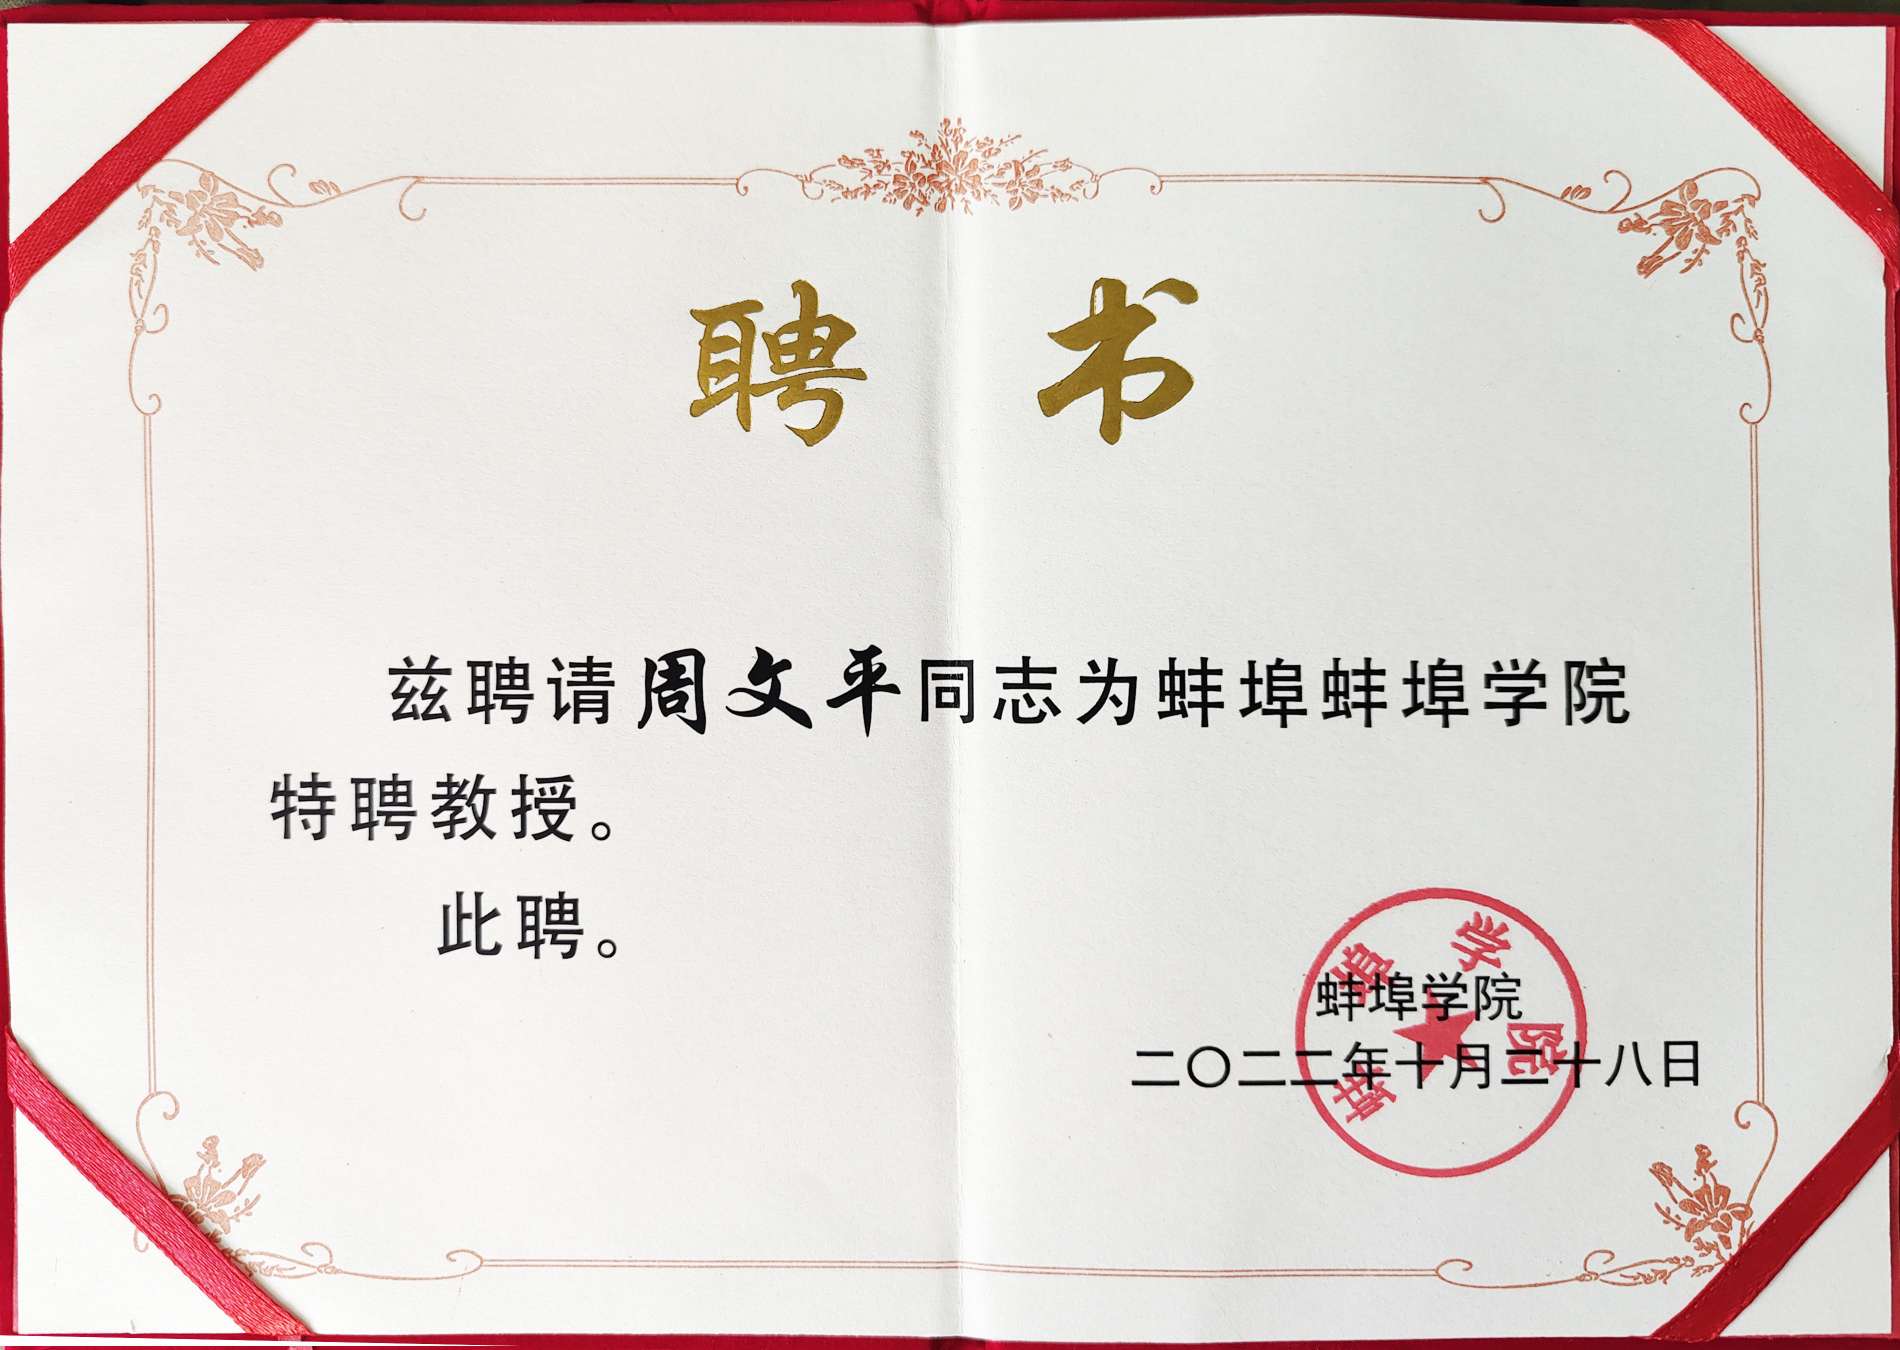 O Bengbu College recebeu o certificado honorário de Long Hua Zhou Wenping "Professor Ilustre"!